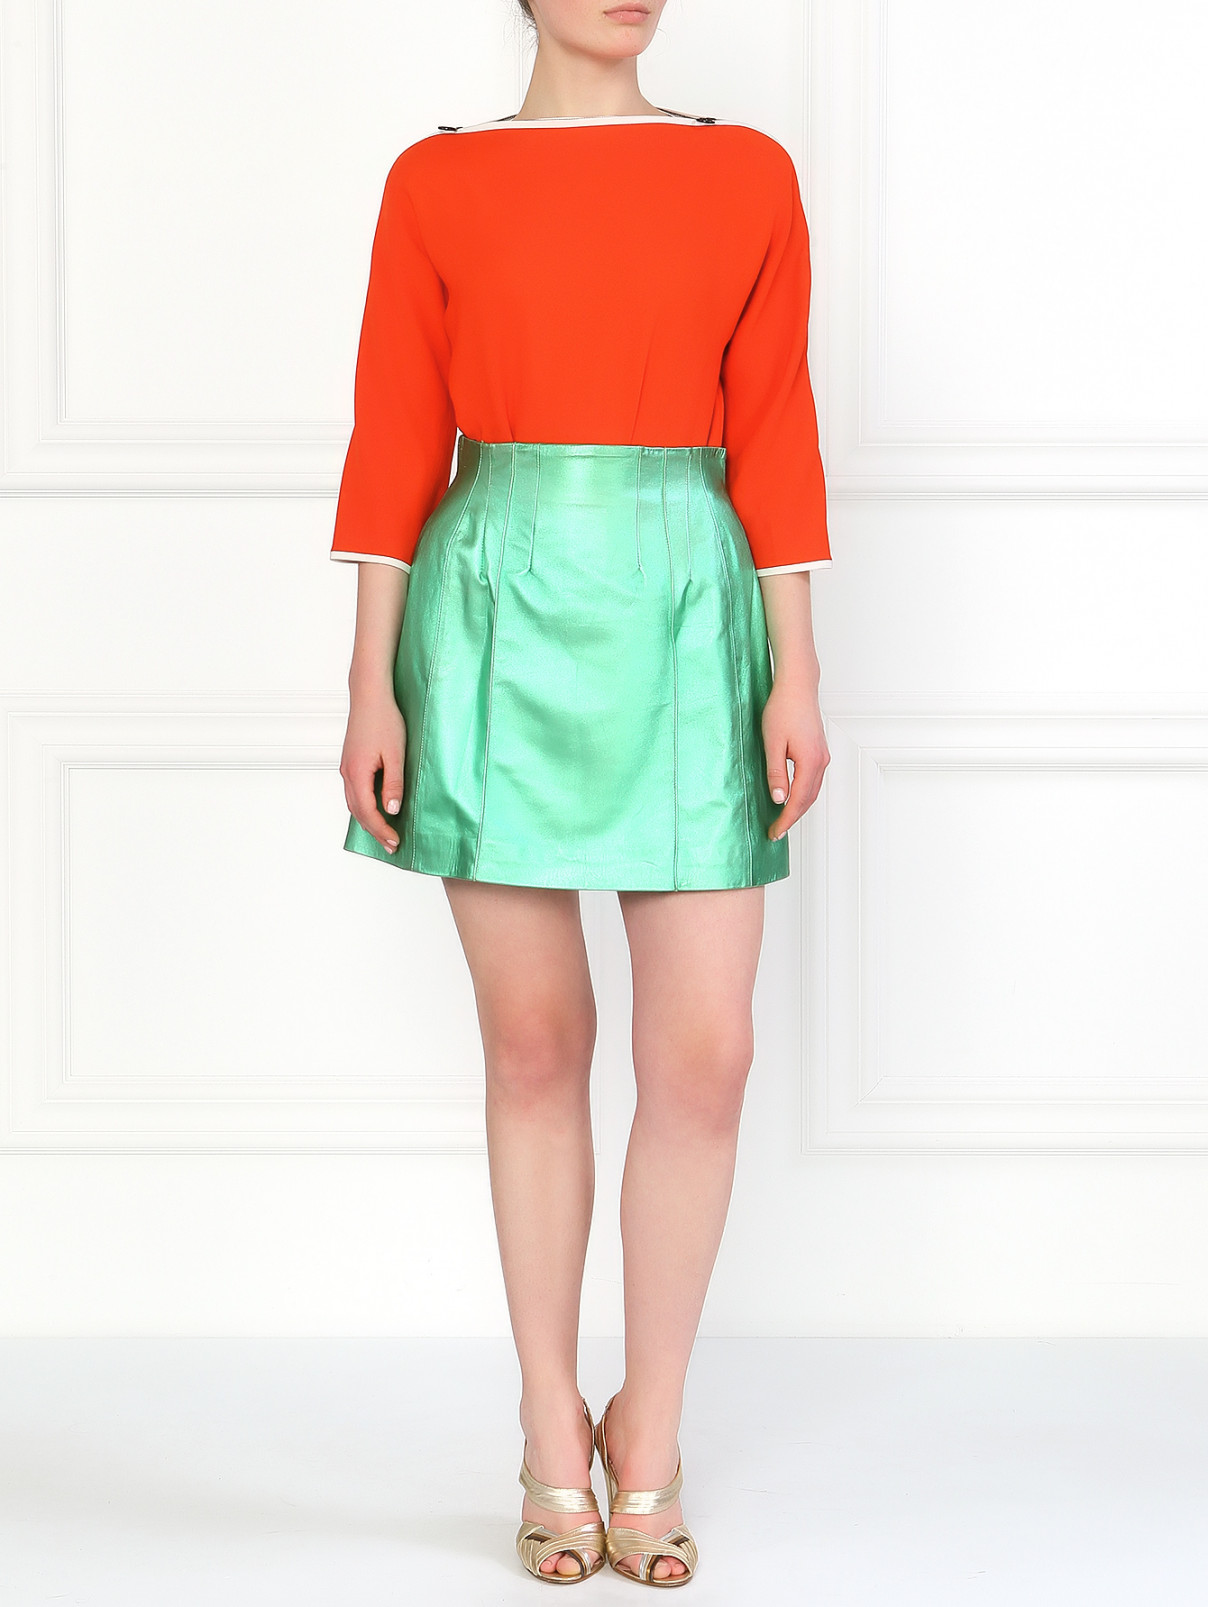 Кожаная юбка-мини JO NO FUI  –  Модель Общий вид  – Цвет:  Металлик